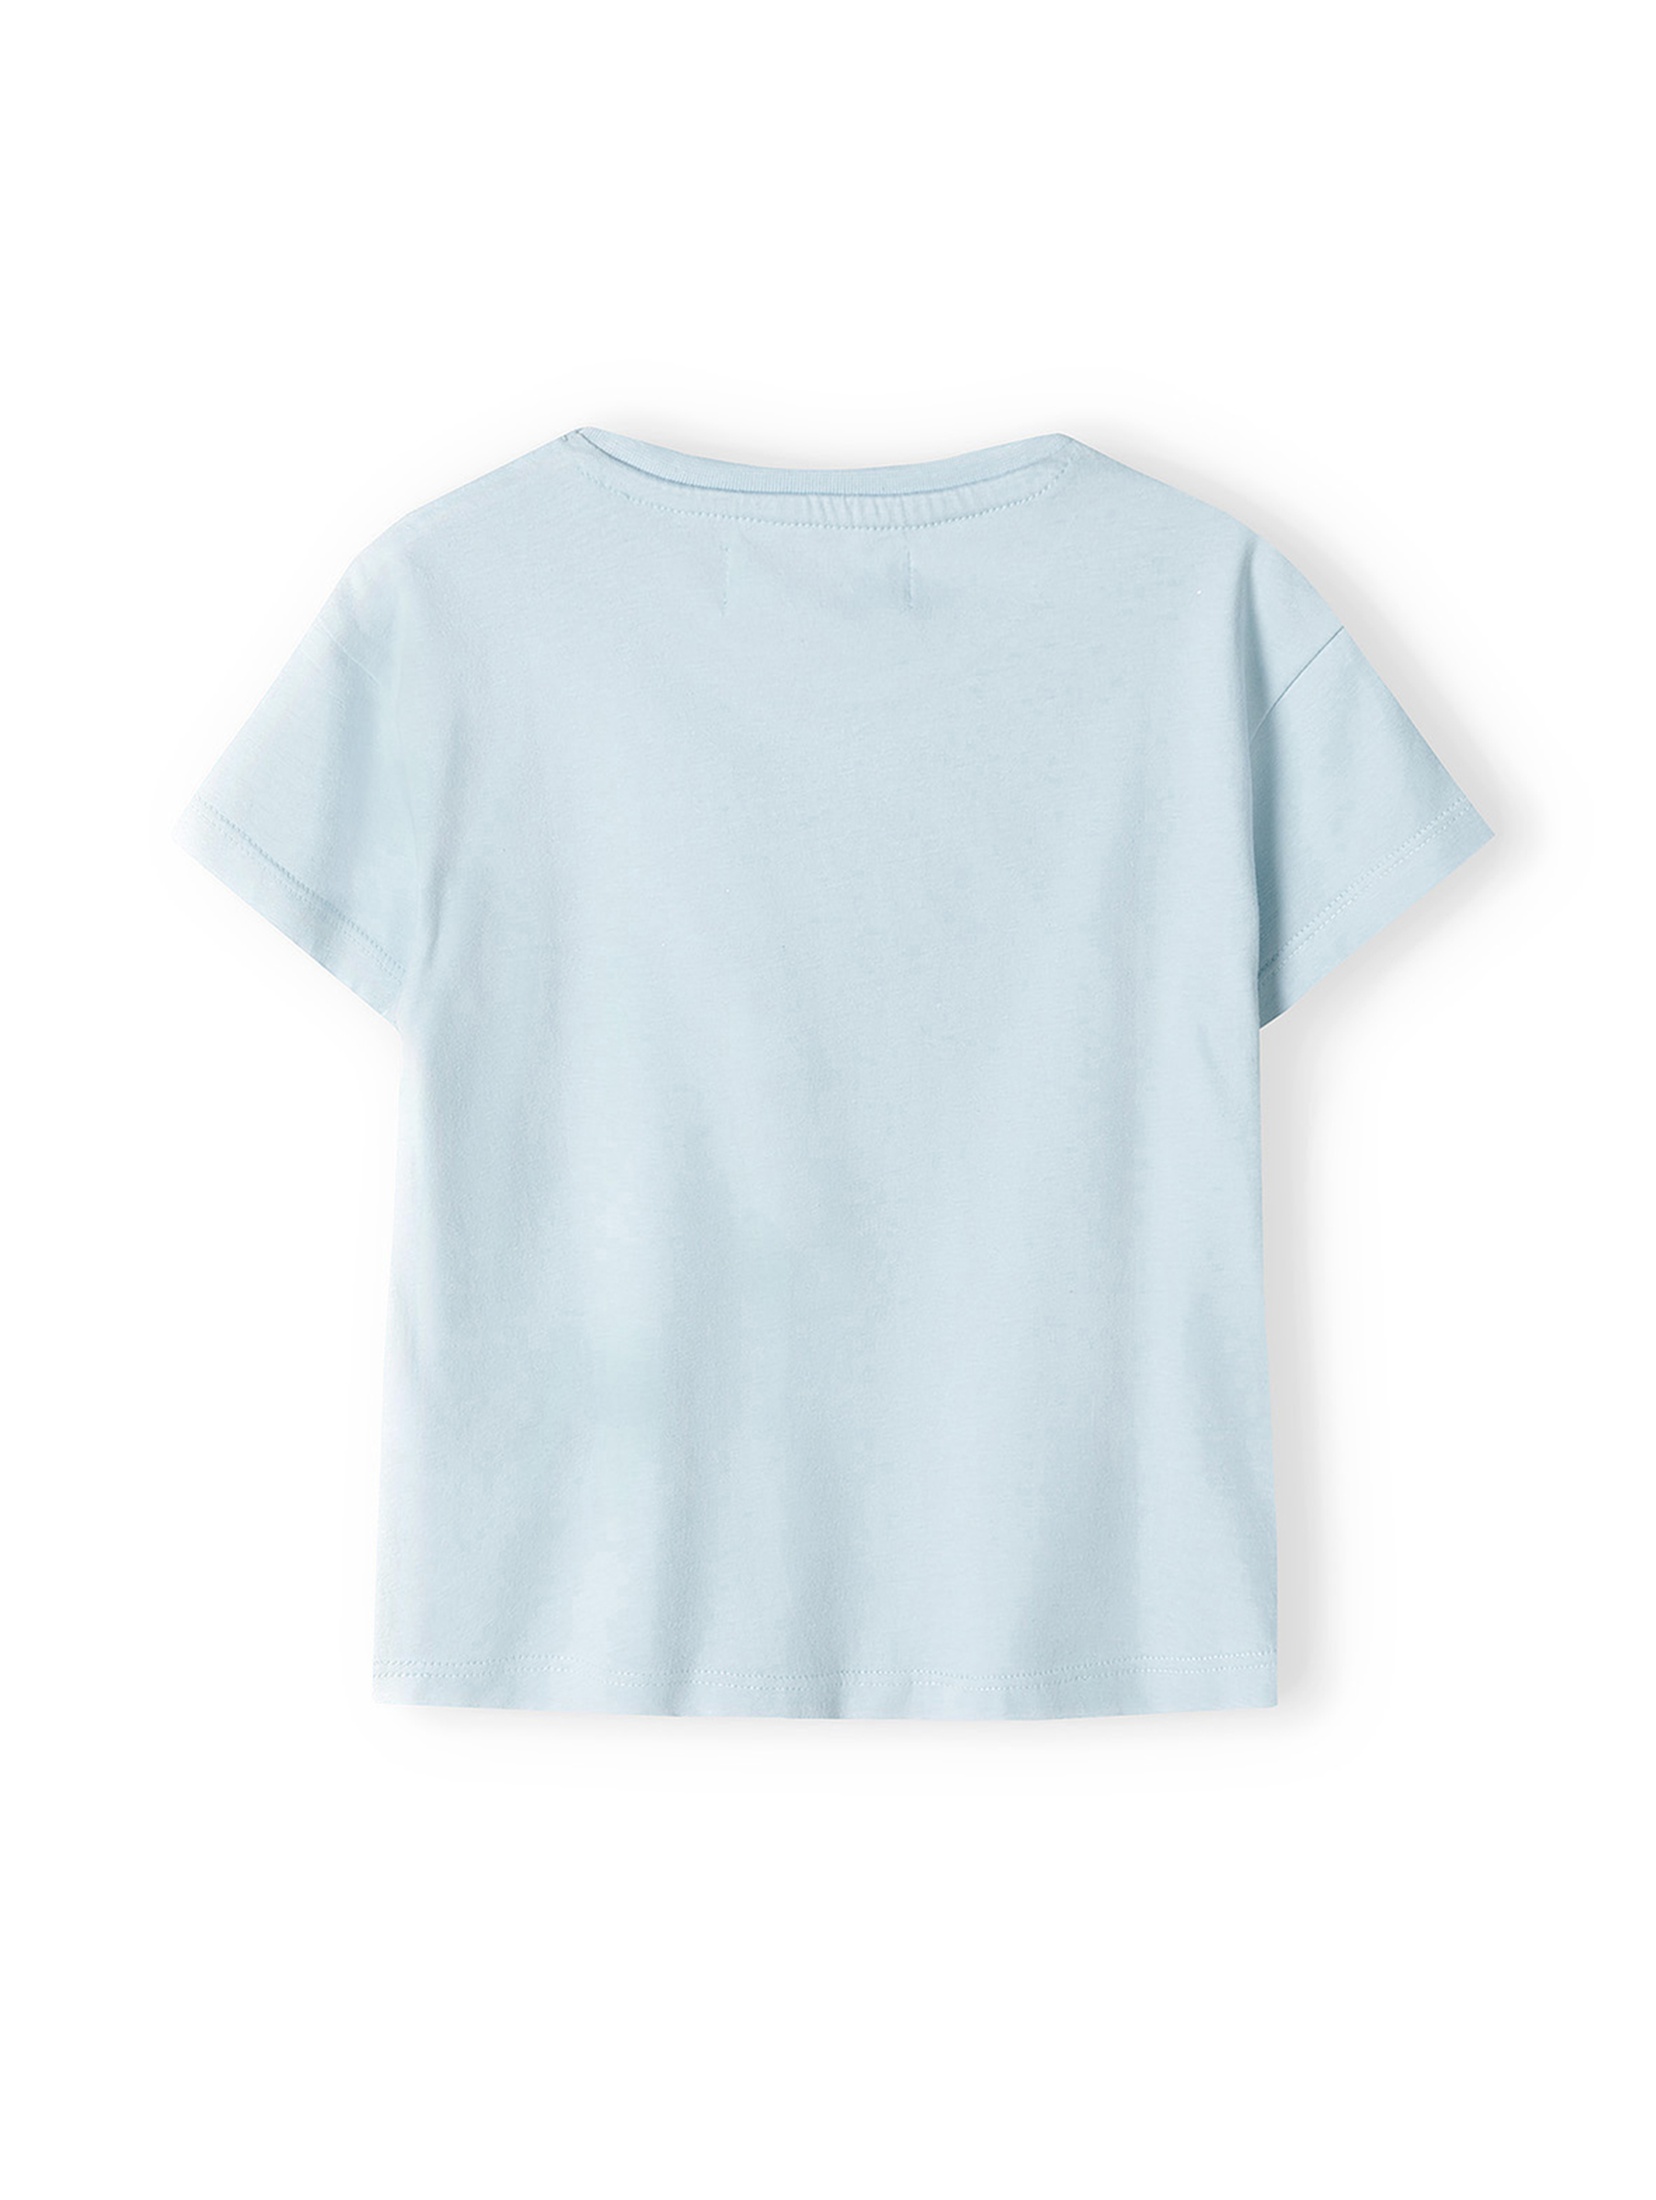 Niebieska bluzka bawełniana dla dziewczynki- smile